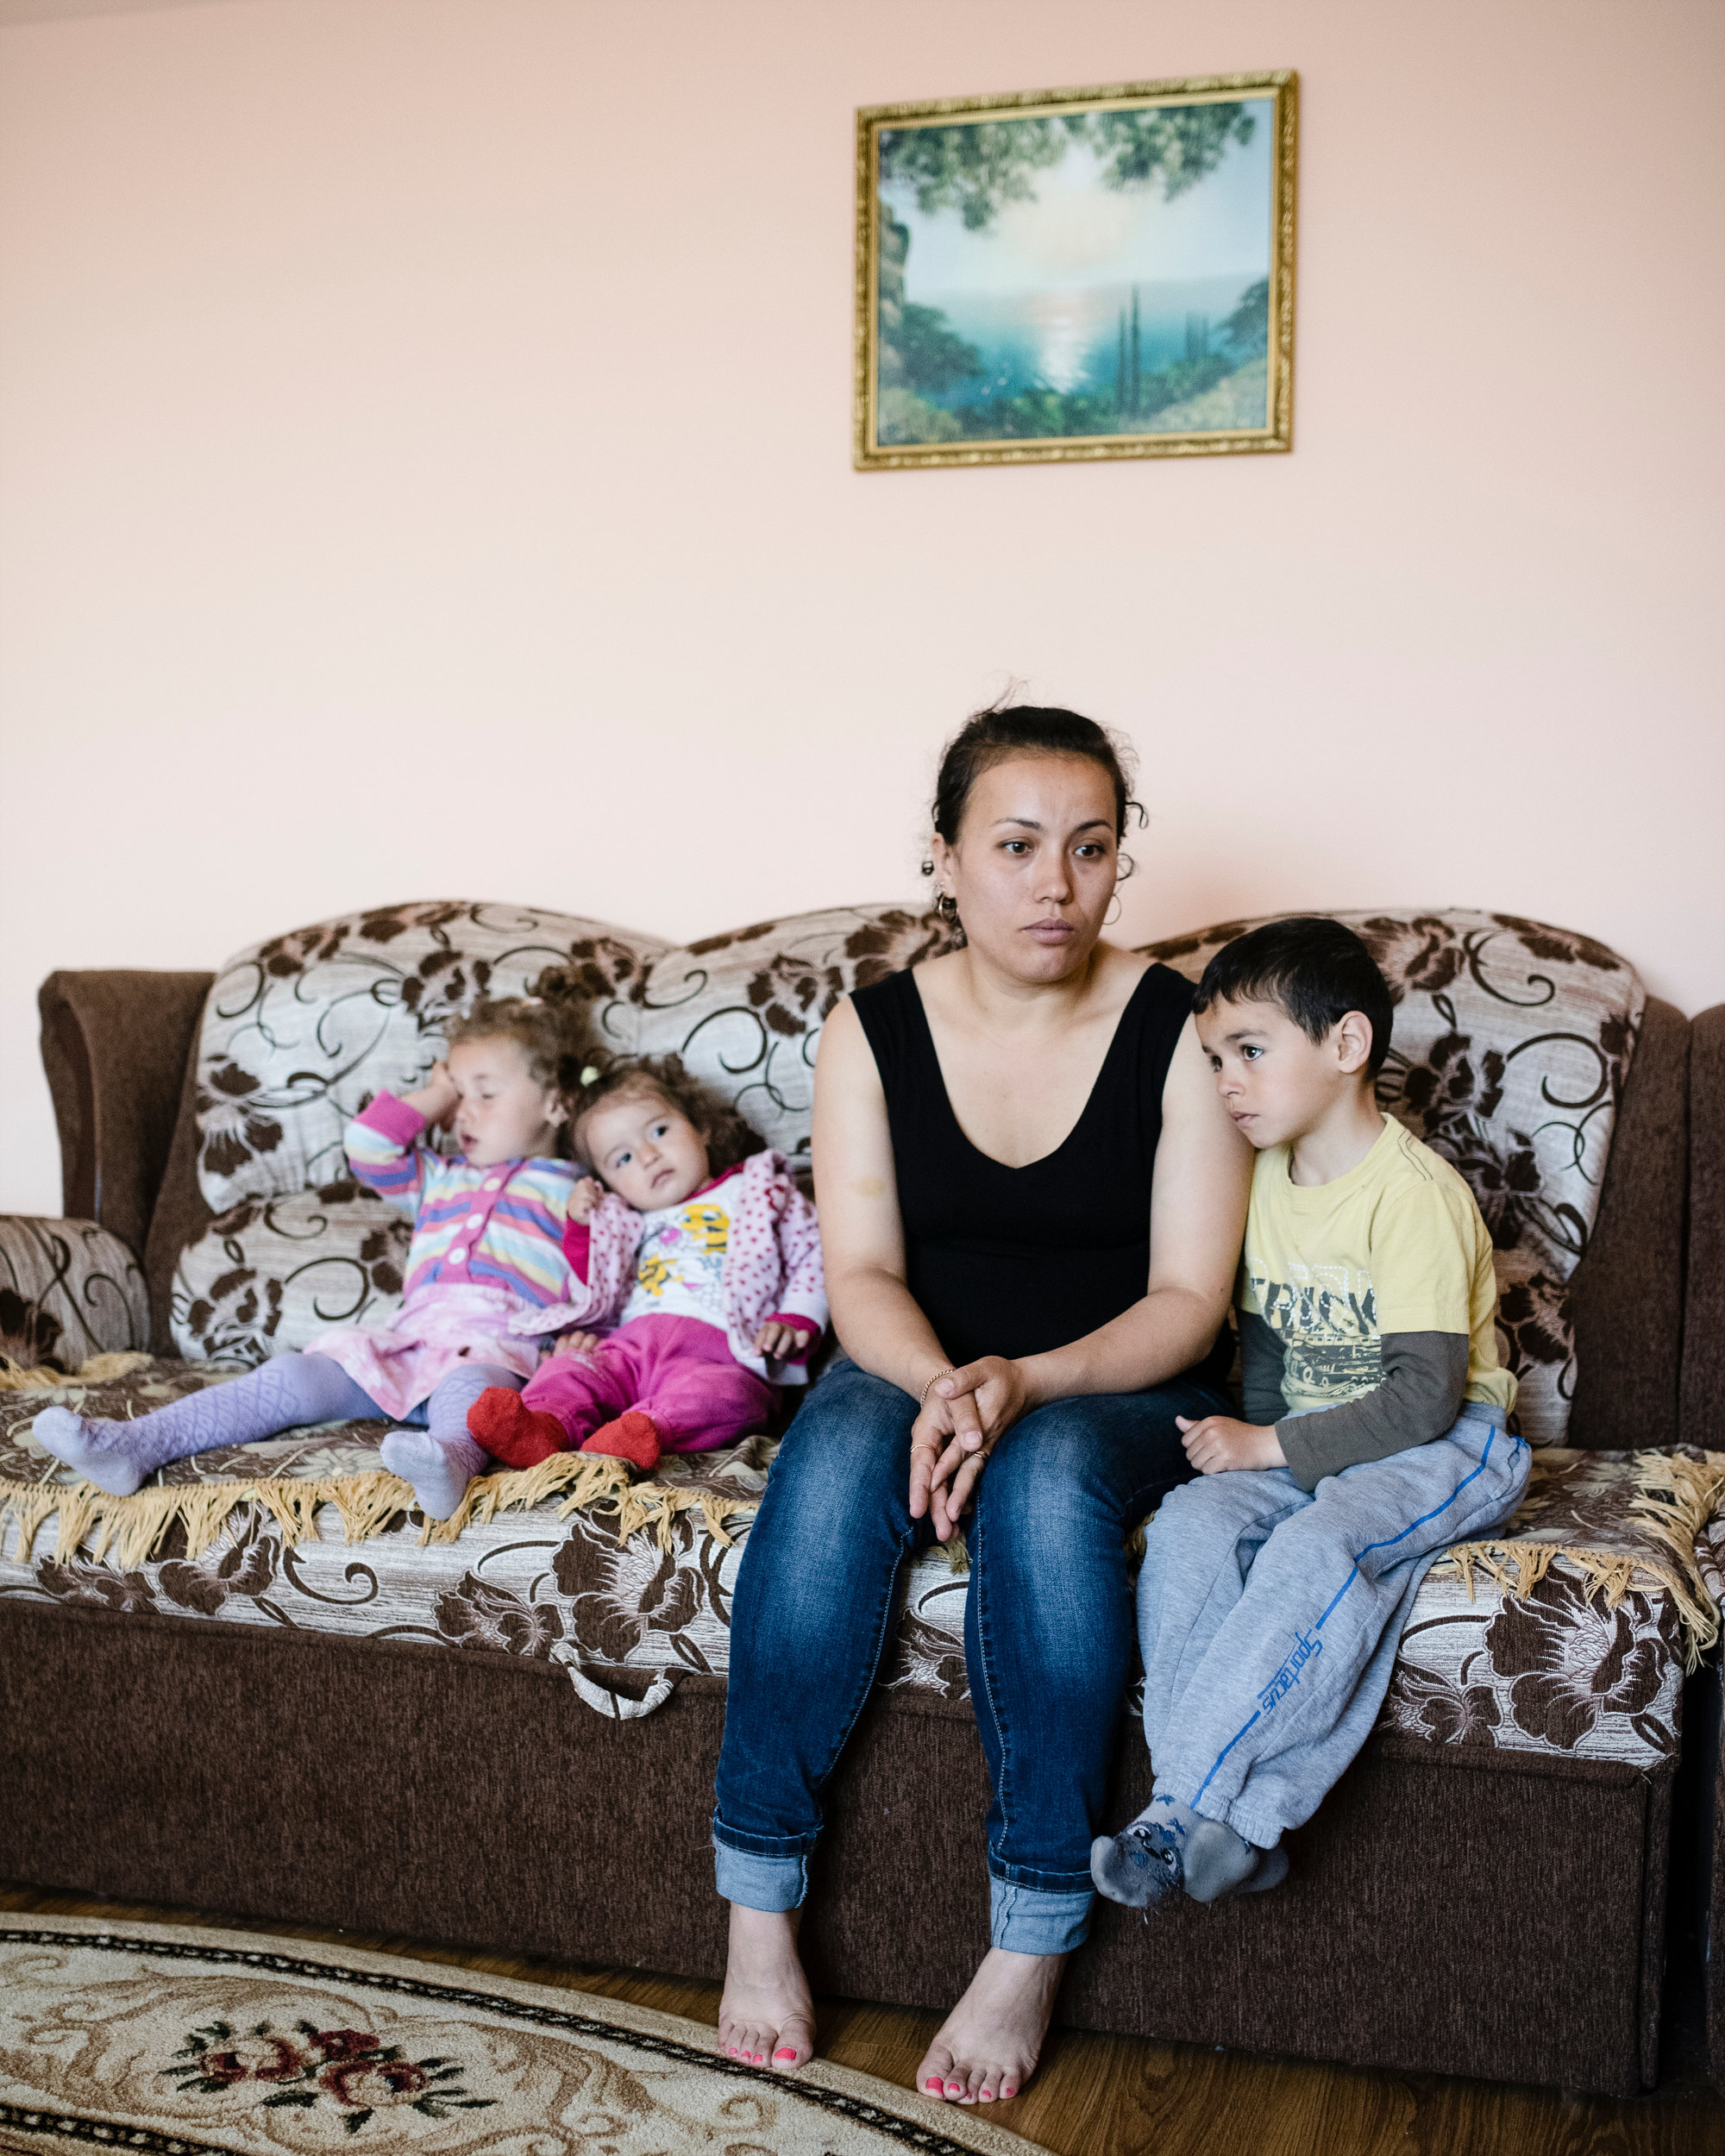 Заріна Аметова з трьома дітьми. Її чоловіка Решата Аметова викрали та вбили проросійські загони самооборони. Його тіло було вкрите слідами тортур. Попри наявність відеоролика про викрадення Заріні повідомили, що розслідування закрито. Жінка особливо хвилюється за свою трирічну доньку Хатіге, яка важко переживає травму втрати.